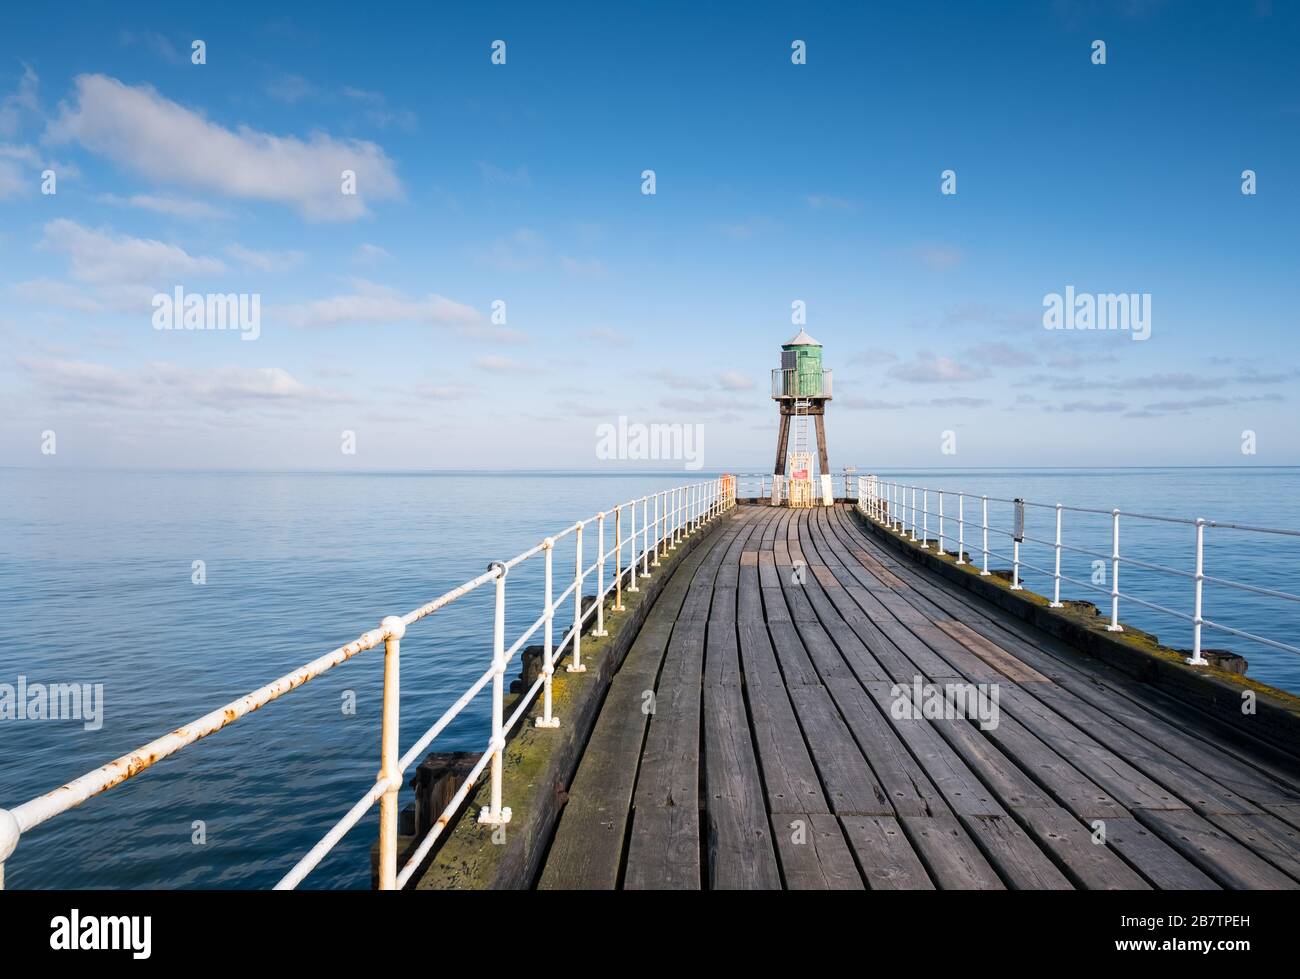 Whitby Pier, north Yorkshire coast, England, UK Stock Photo